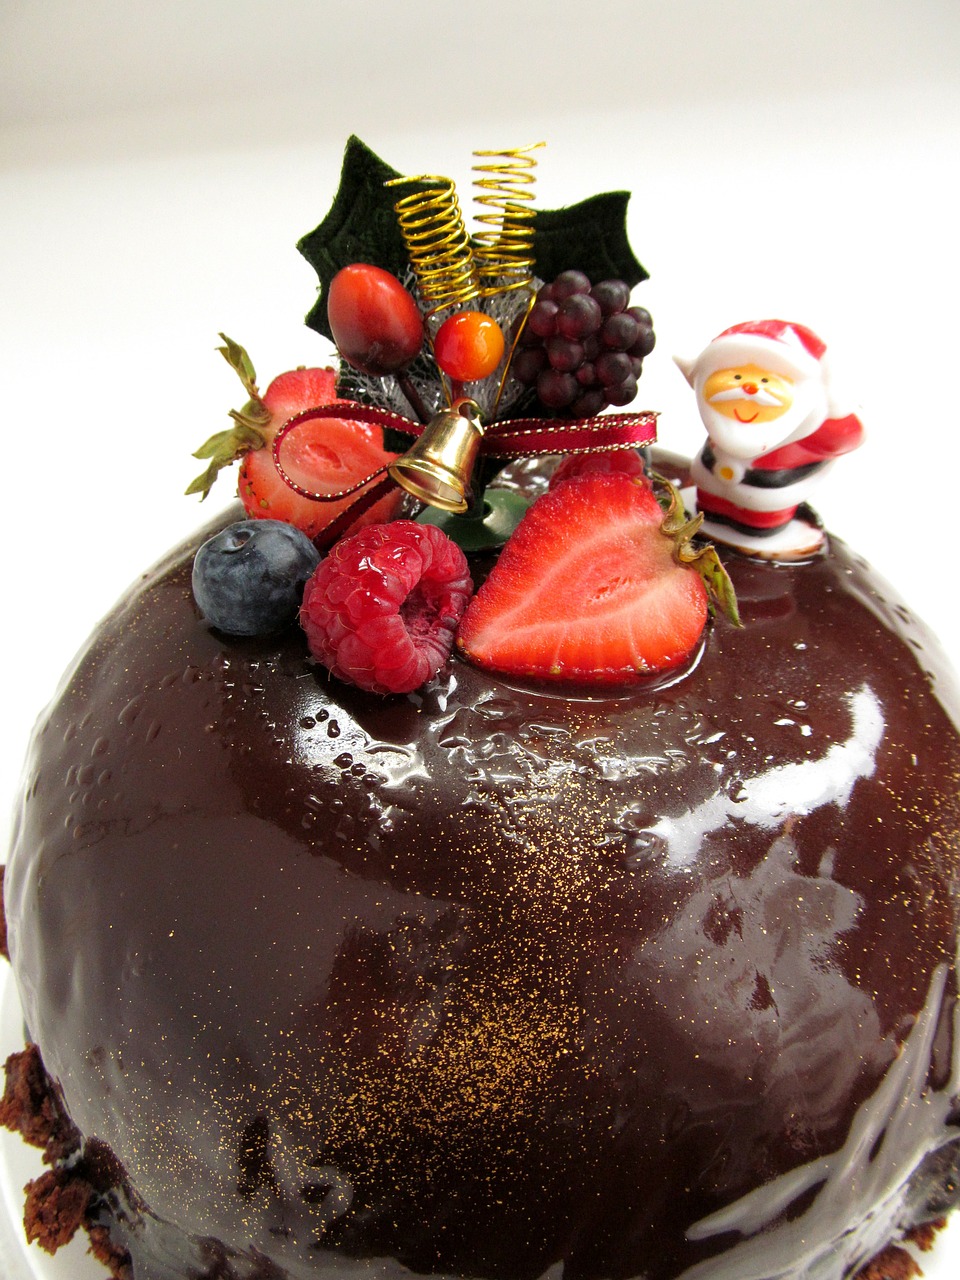 コストコのタキシードケーキ クリスマス前に購入方法や価格をチェック サヤメディア